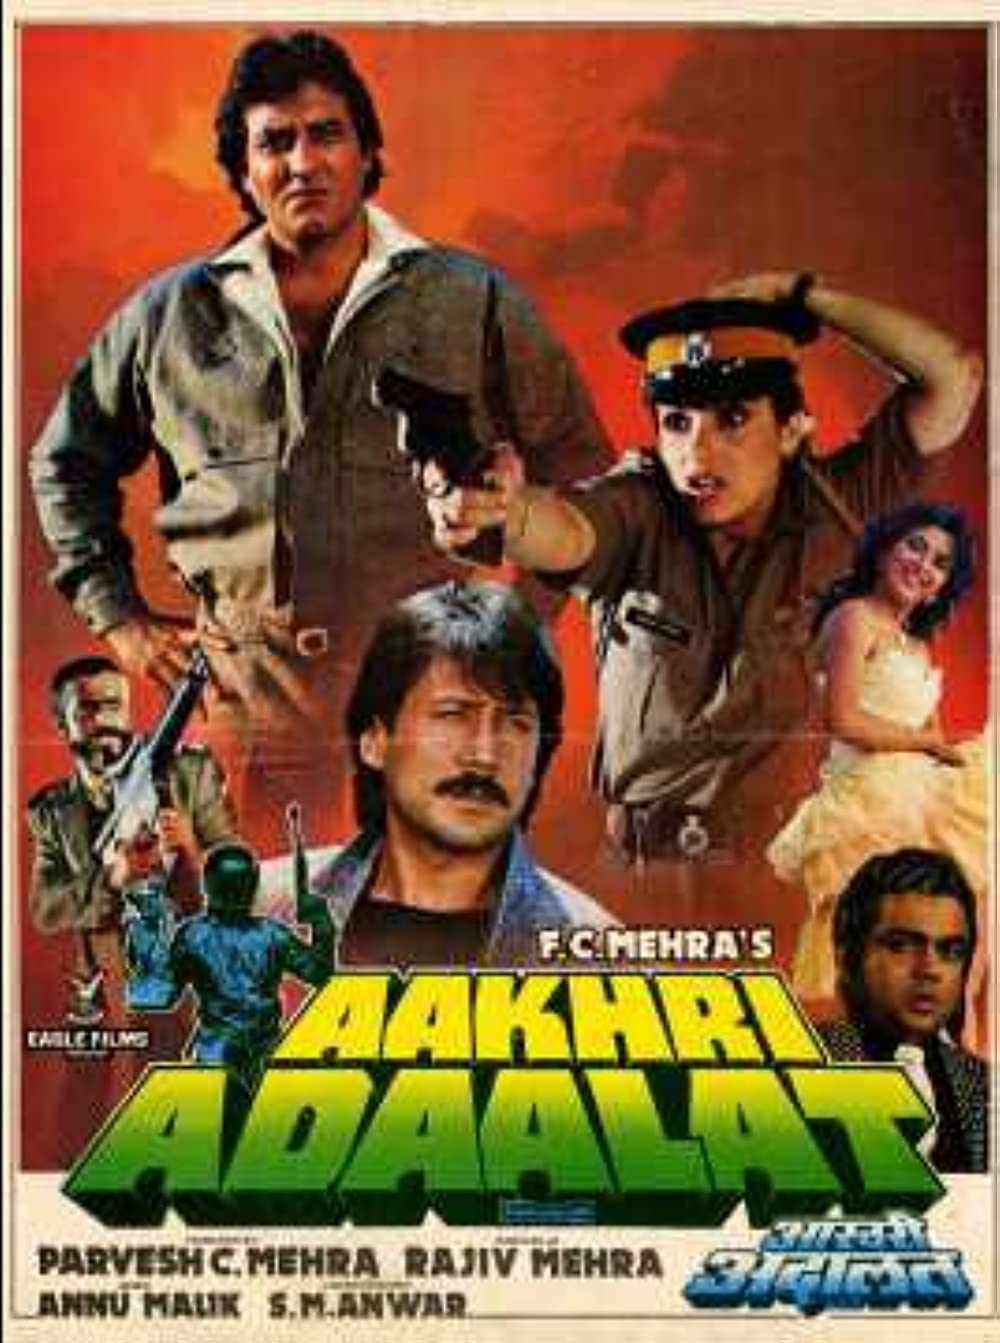 مشاهدة فيلم Aakhri Adaalat 1988 مترجم